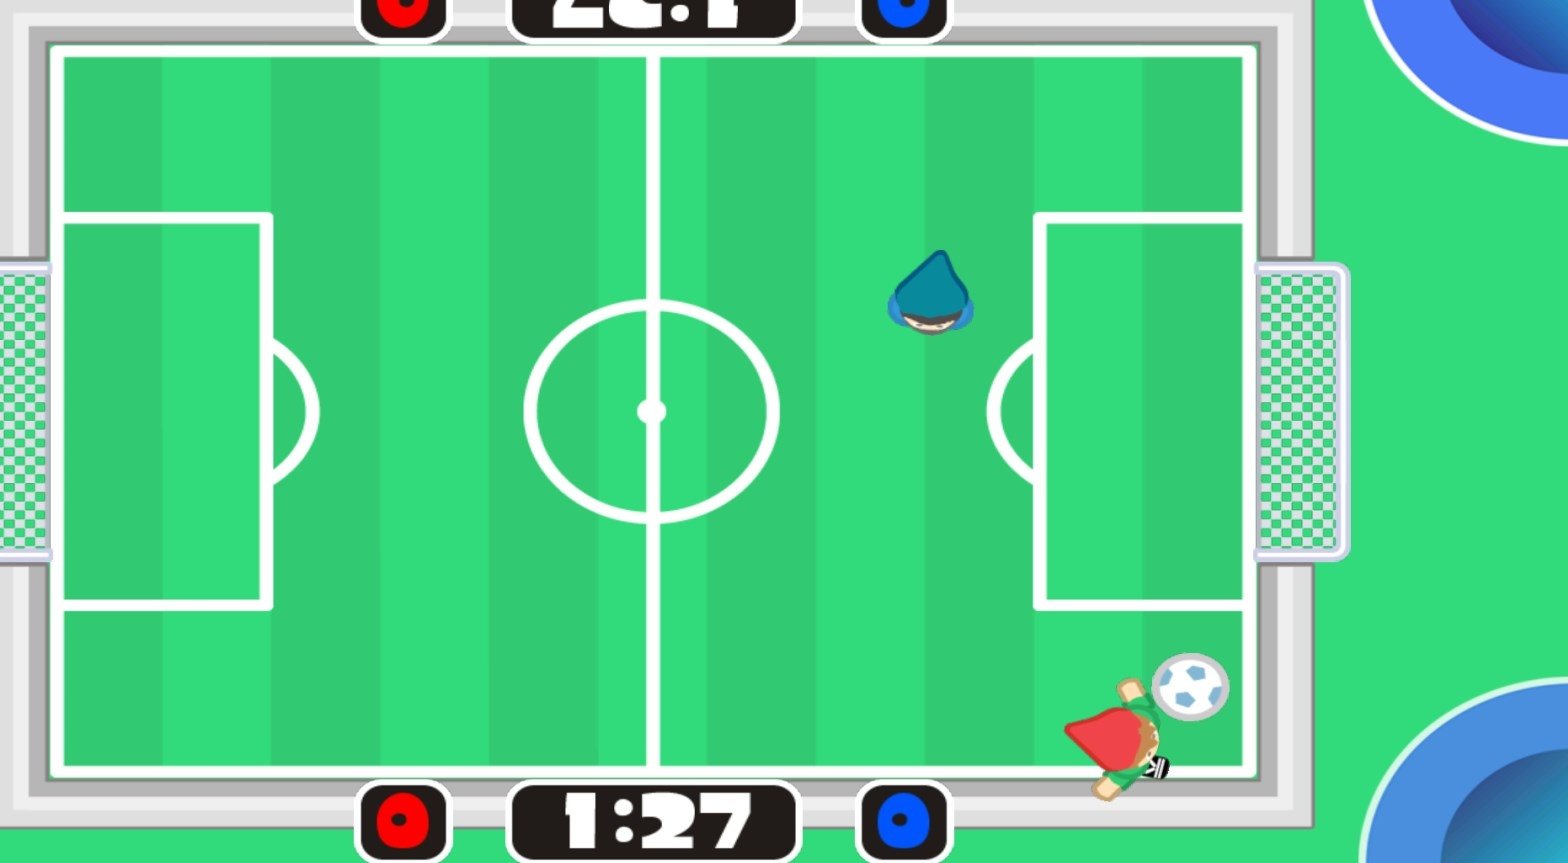 Juegos De 2 3 4 Jugadores 313 Descargar Para Android Apk - new trick roblox soccer for android apk download